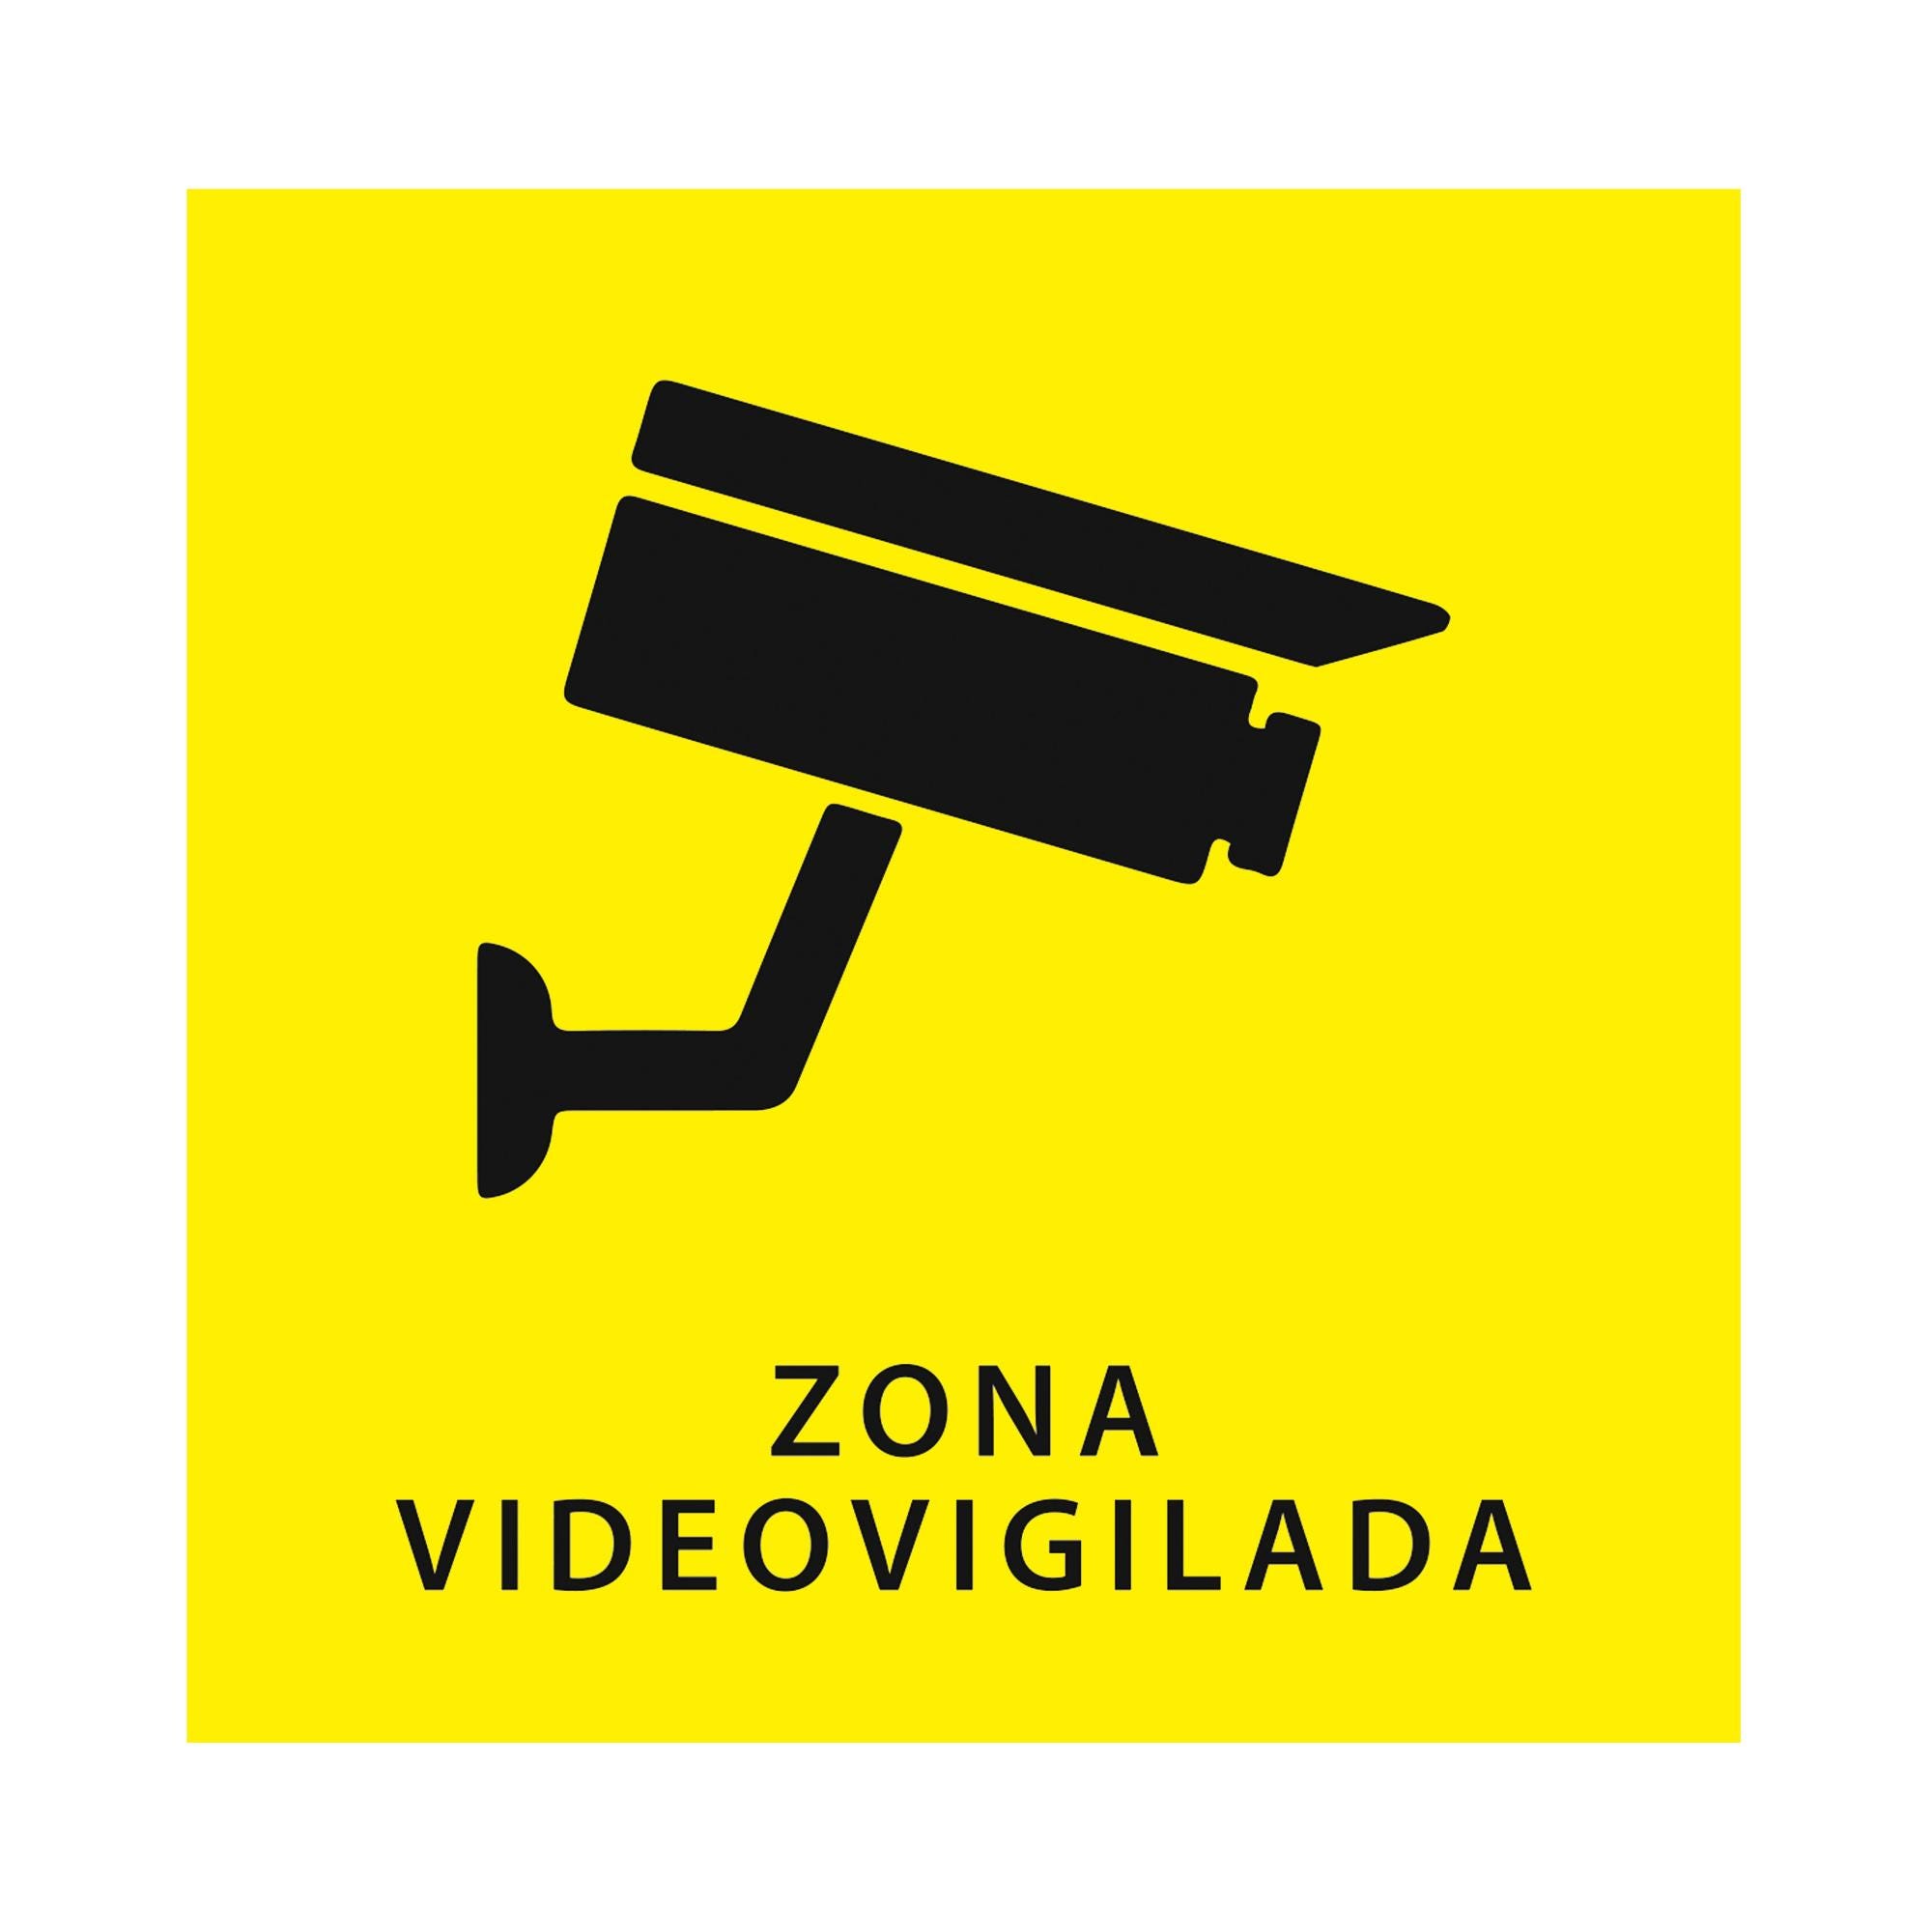 SEÑAL ZONA VIDEOVIGILADA